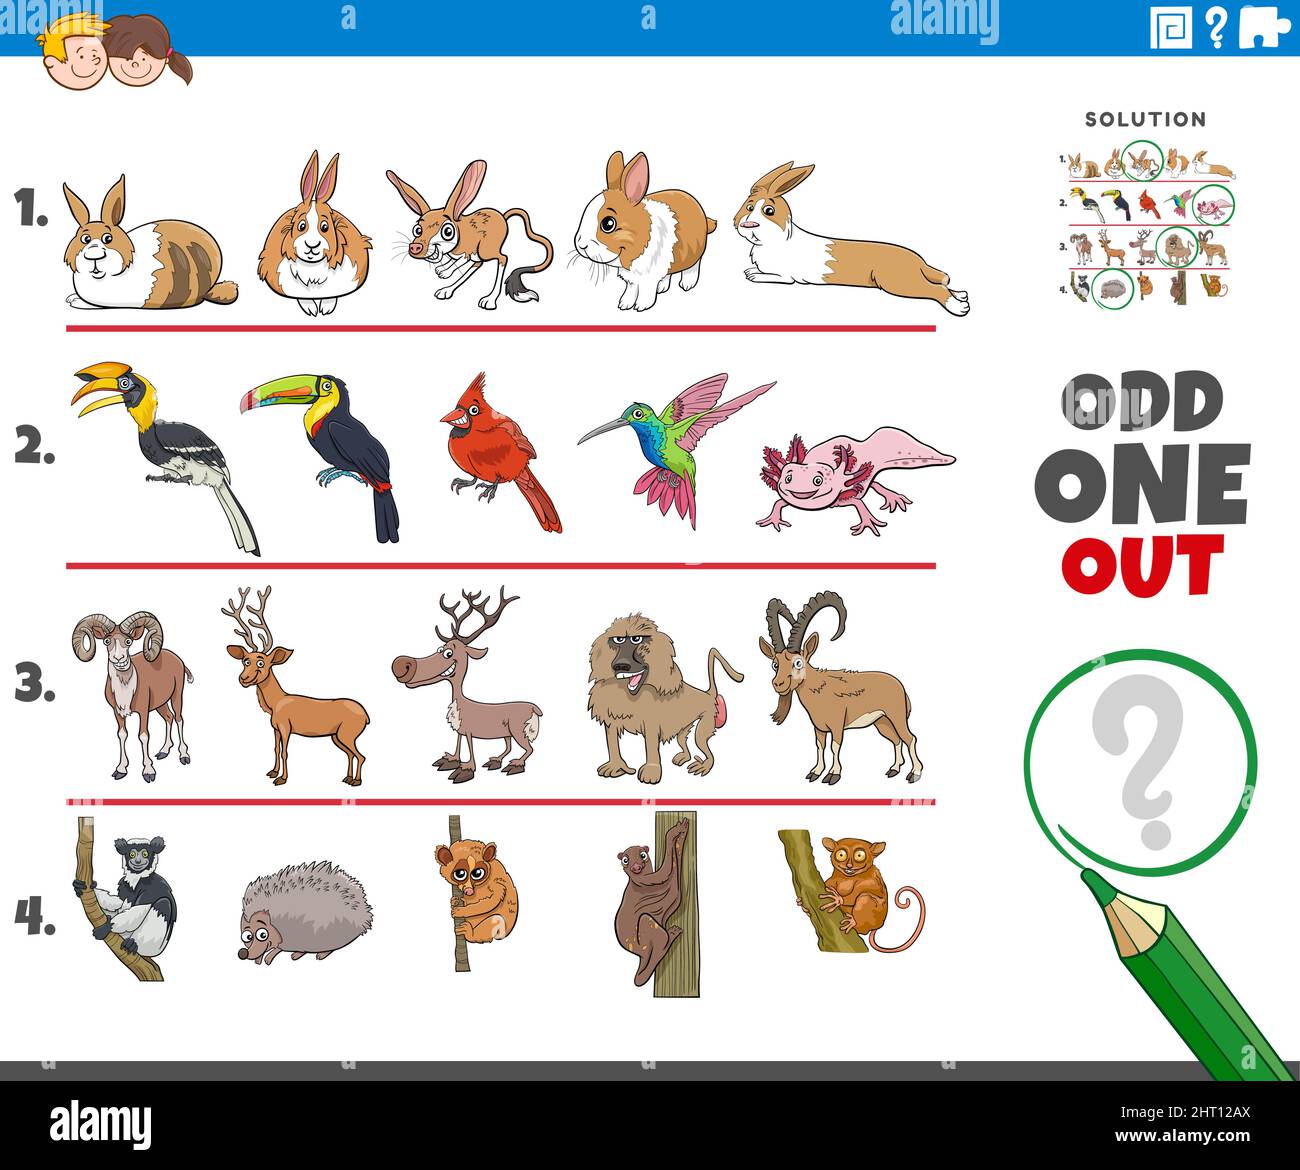 Illustration de dessin animé d'une image impaire dans une rangée tâche éducative pour les enfants avec des personnages d'animaux de bande dessinée Illustration de Vecteur